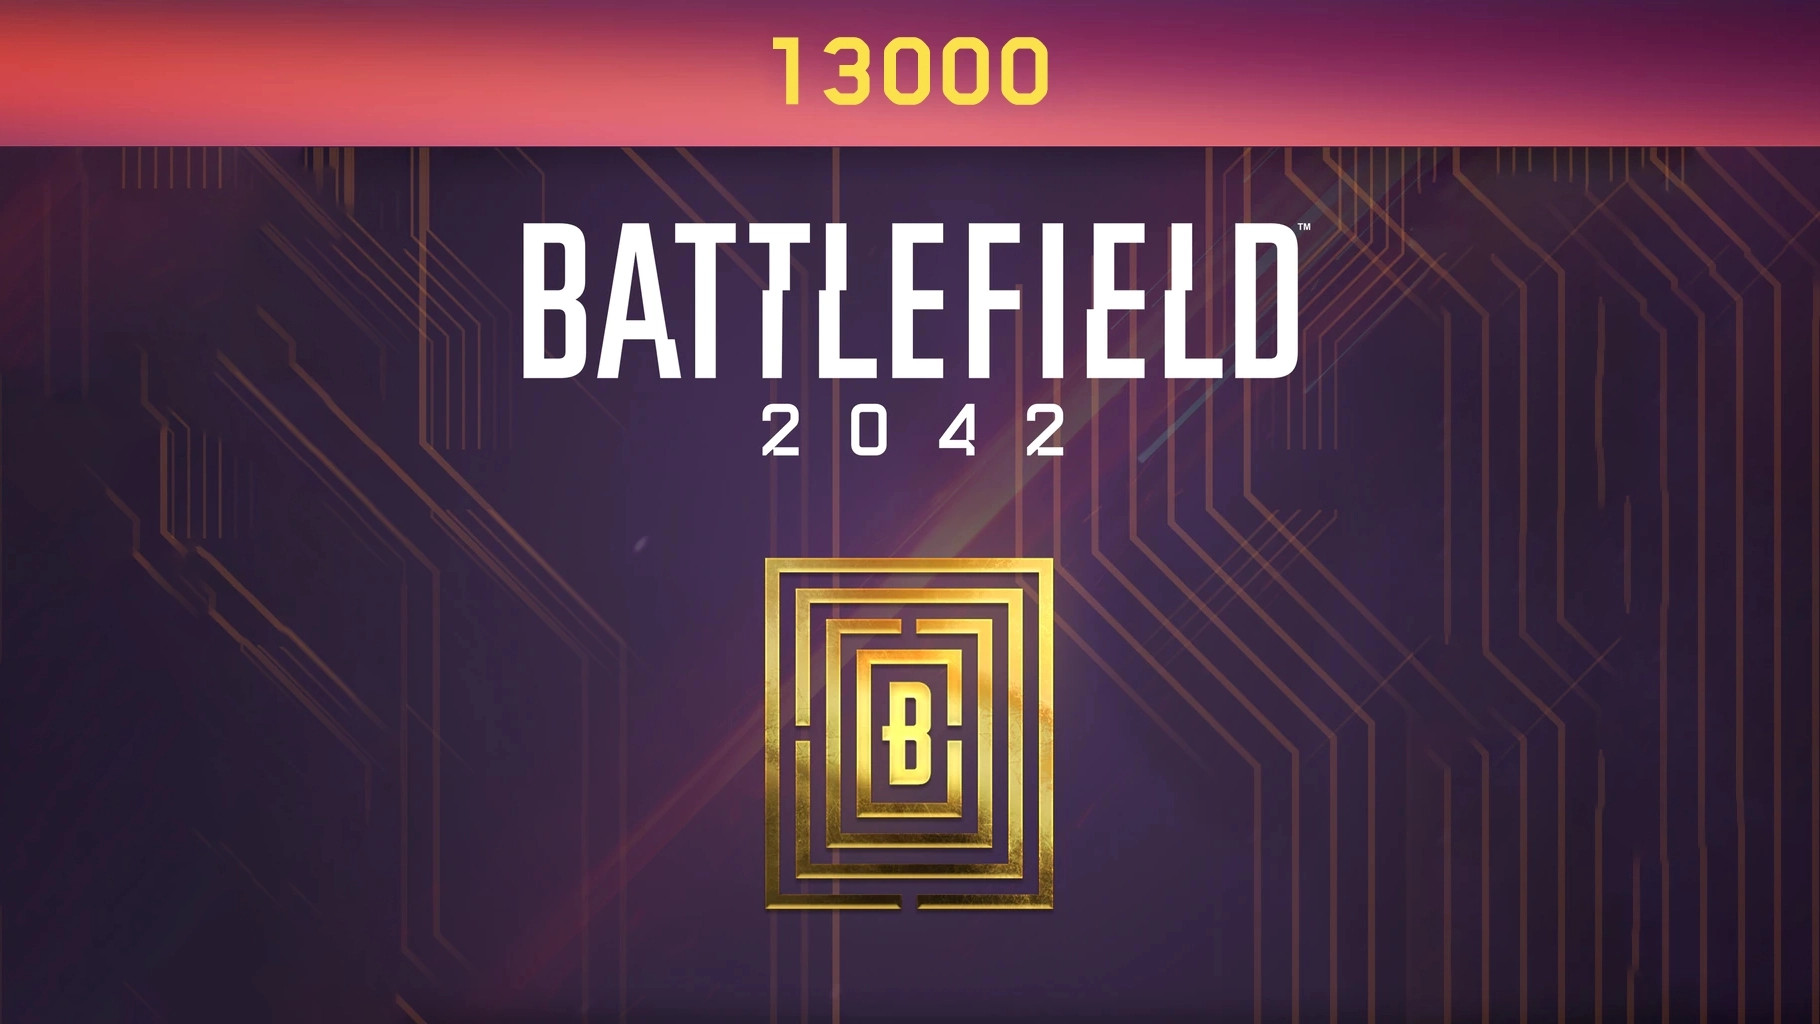 [$ 96.6] Battlefield 2042 - 13000 BFC Balance XBOX One / Xbox Series X|S CD Key